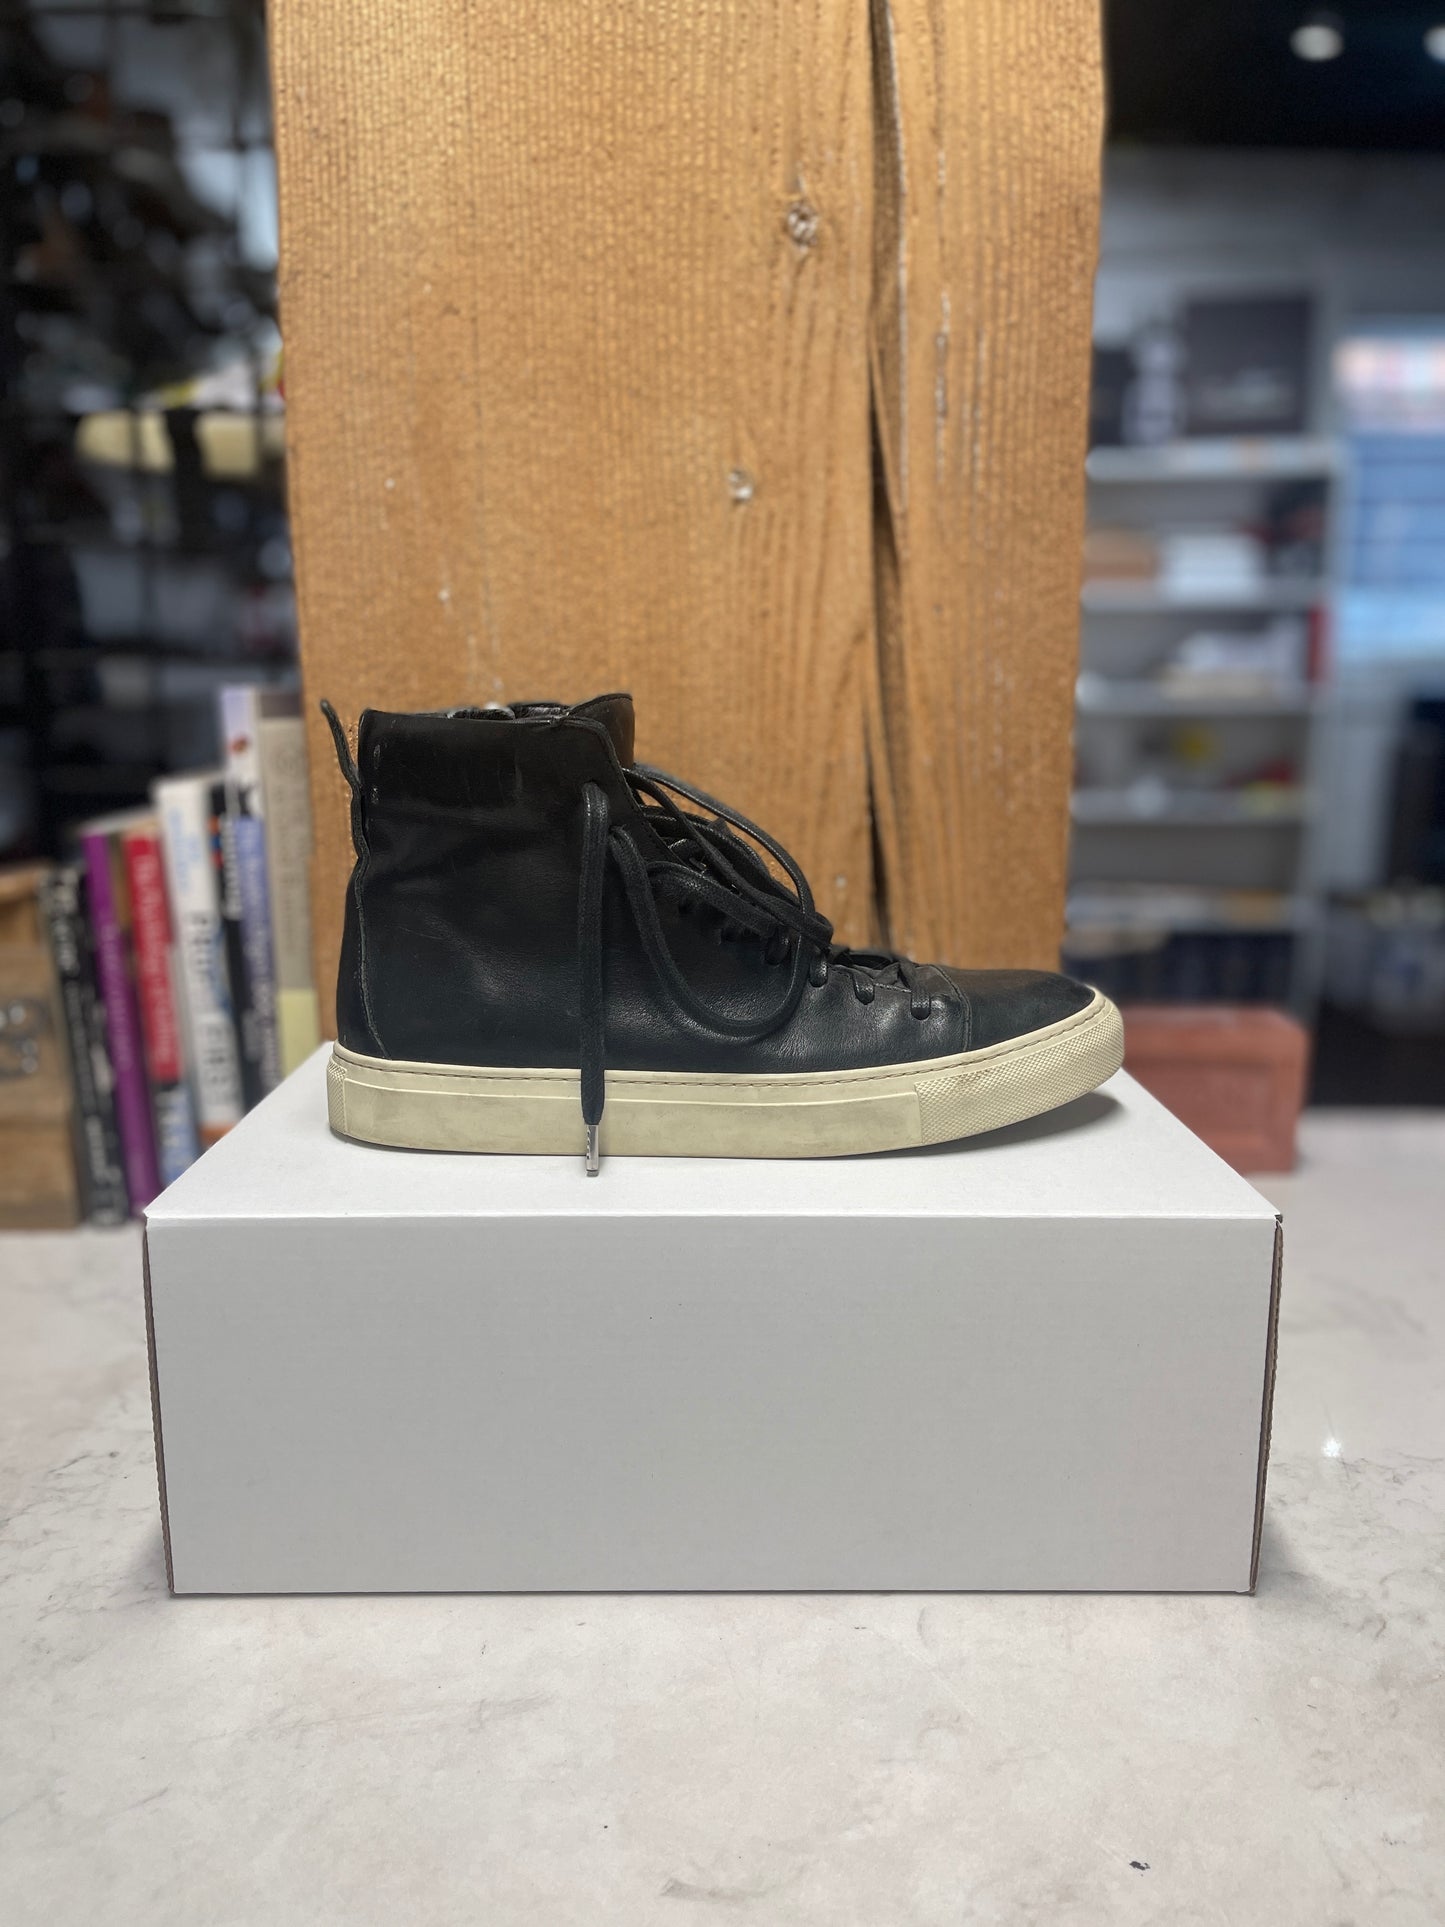 John Varvatos Black Hightop Sneakers (Size 8.5)